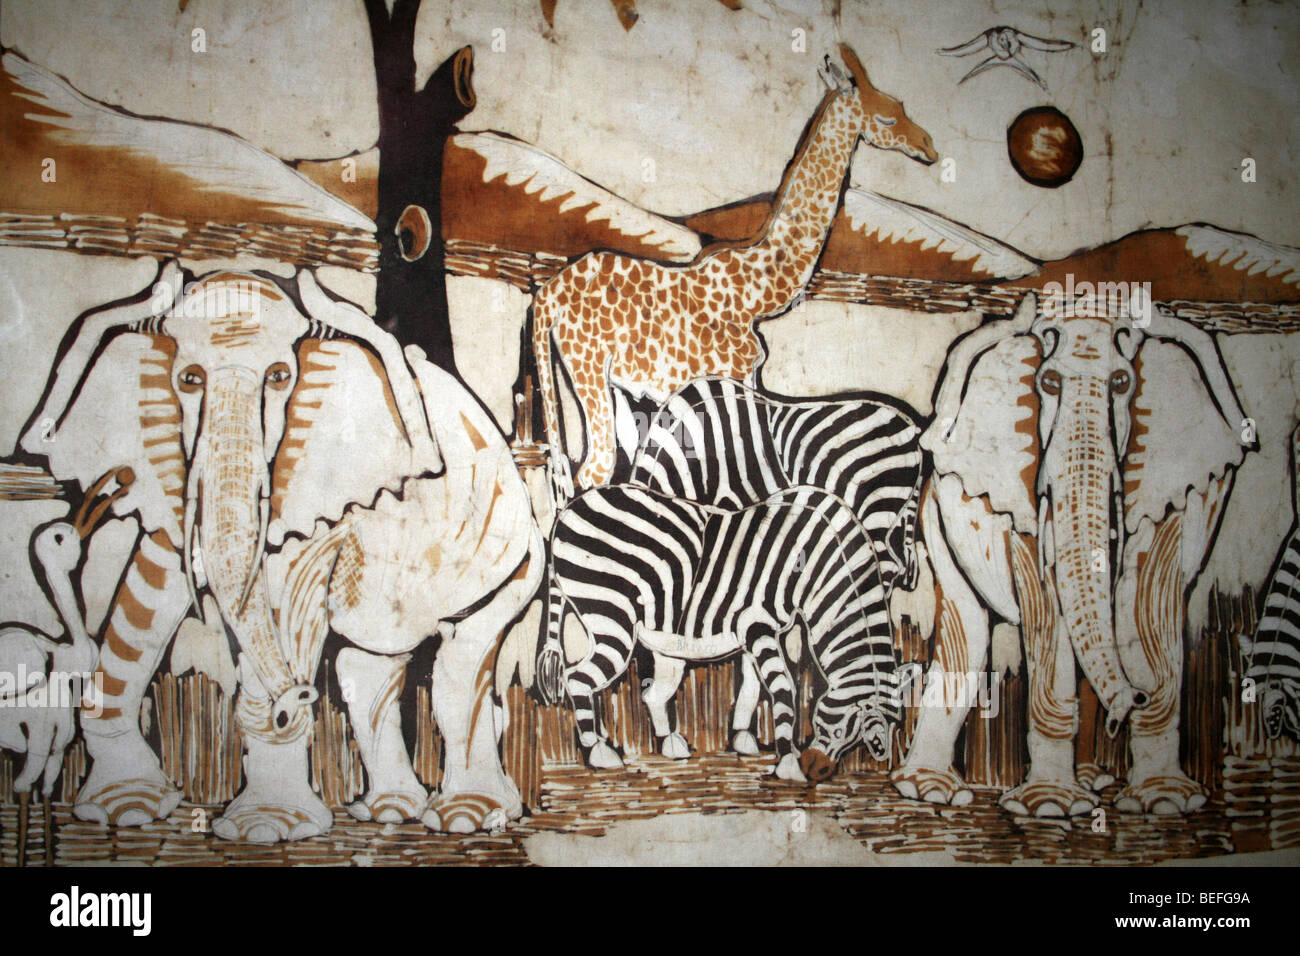 La fauna africana que inspiró el batik mostrando elefantes, cebras y jirafas Foto de stock